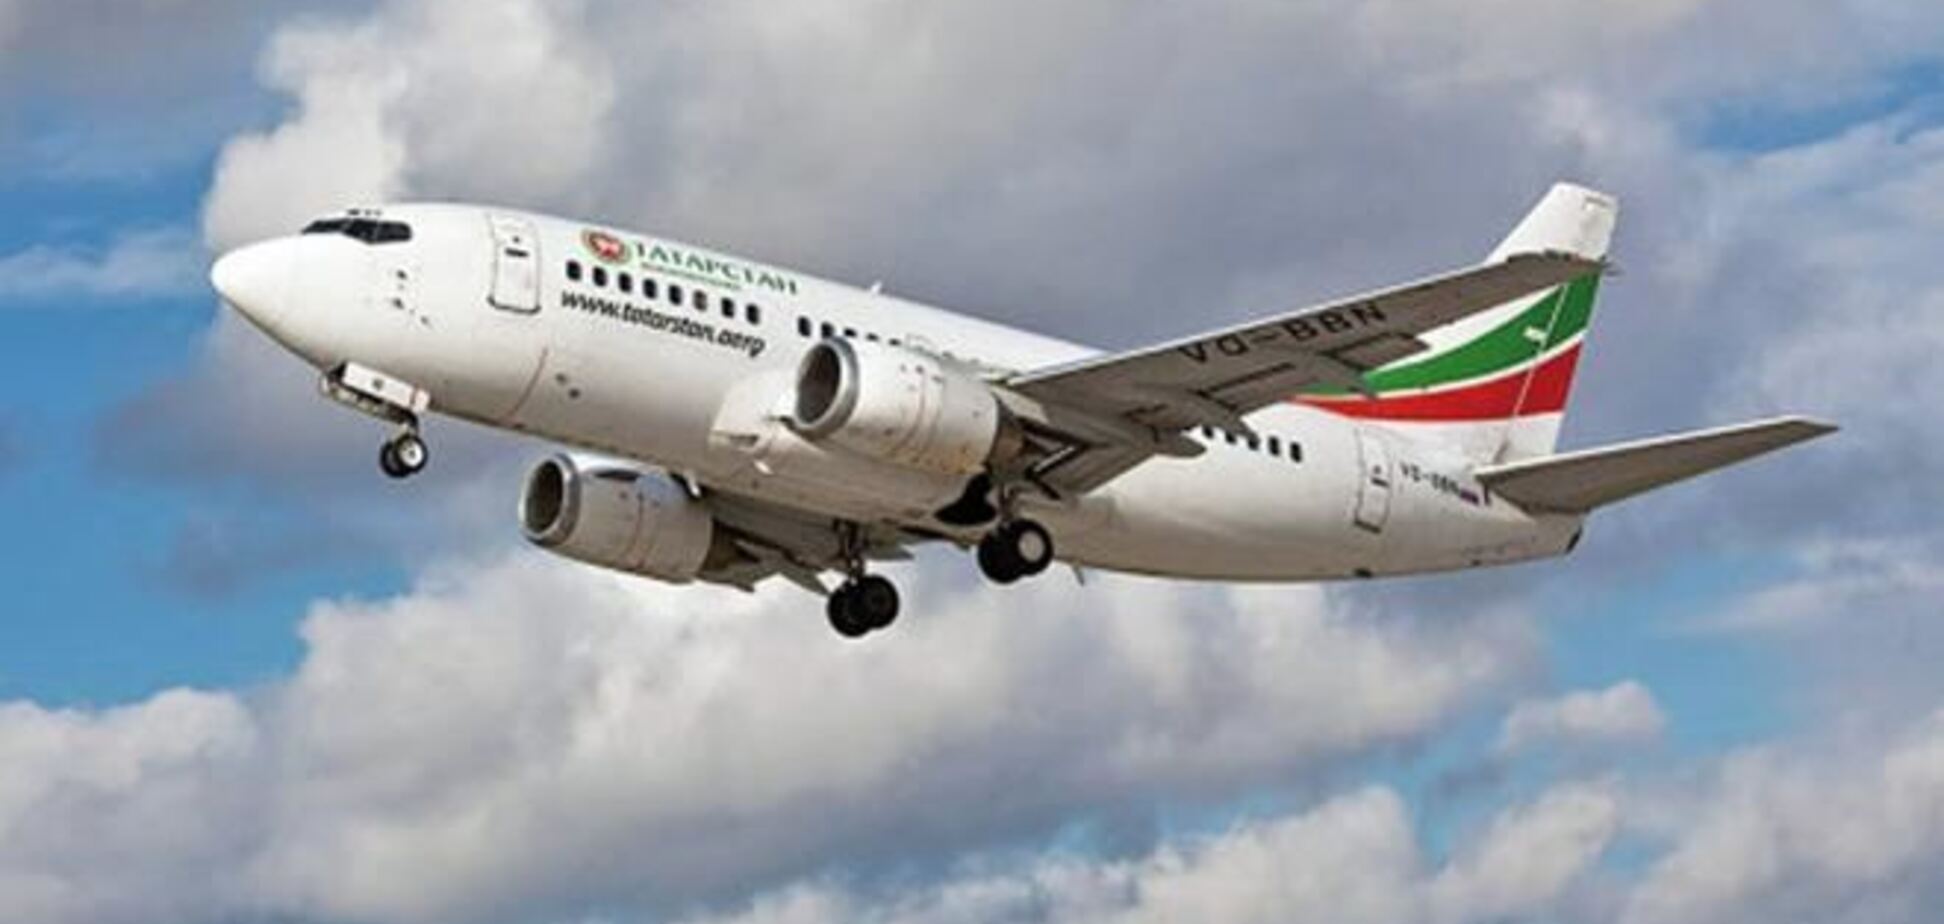 Авіакомпанія 'Татарстан' припиняє експлуатацію 'Боїнгів-737'